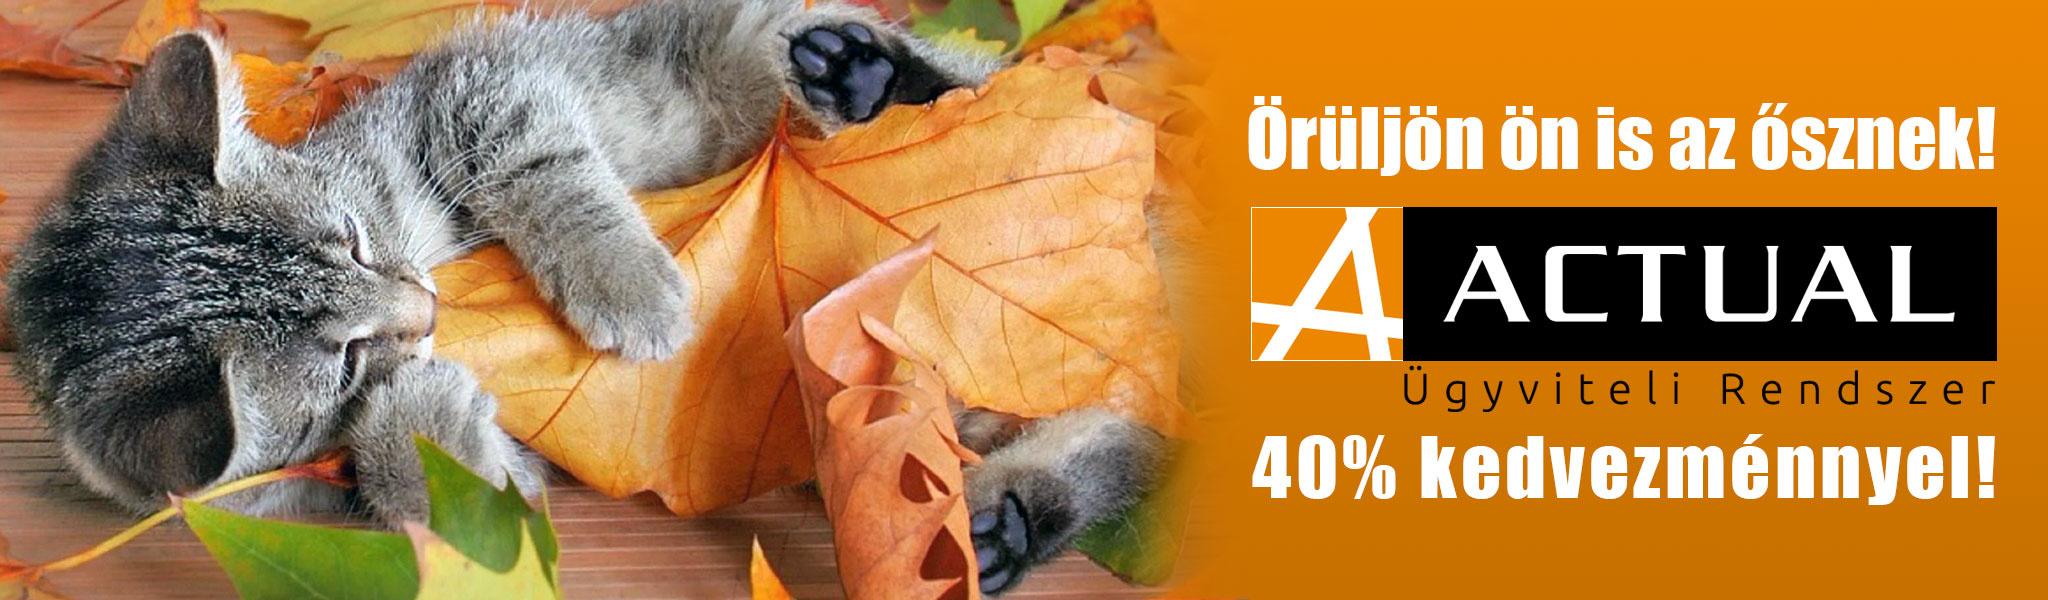 Örüljön ön is az ősznek - ACTUAL Ügyviteli Rendszer 40% kedvezménnyel!